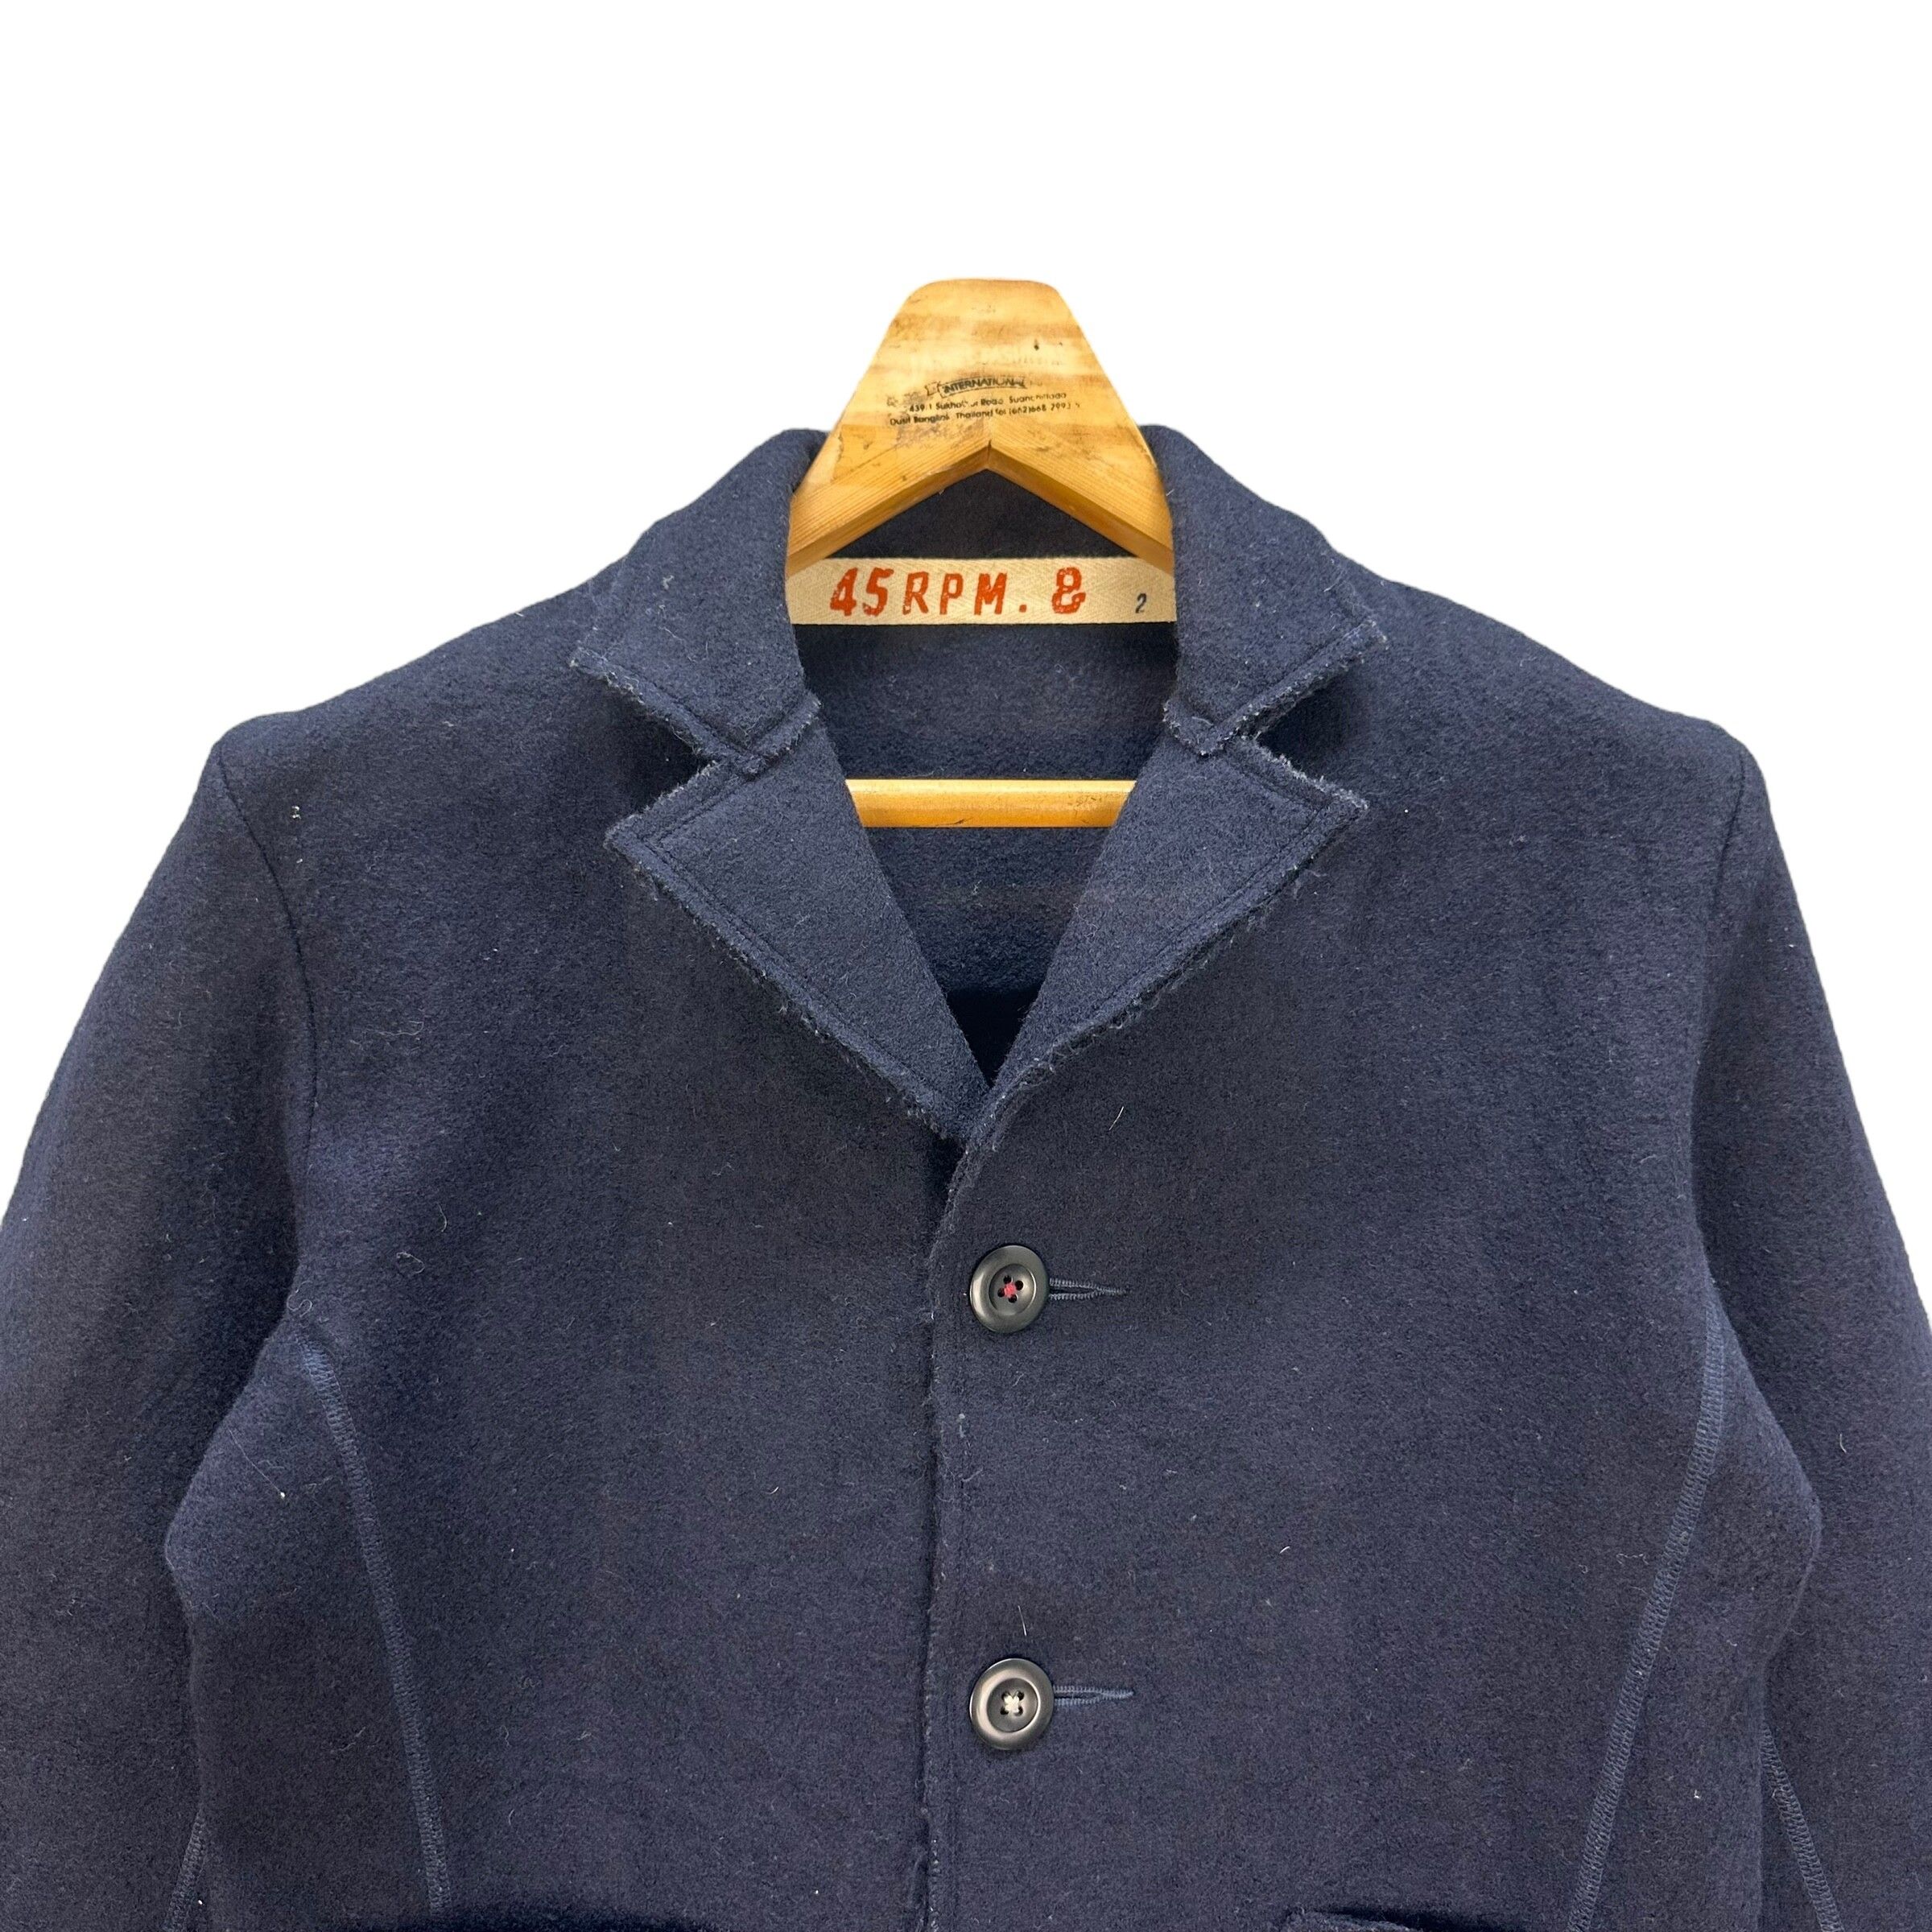 Vintage 45RPM Wool Jacket / Casual Jacket #8900-039 - 2